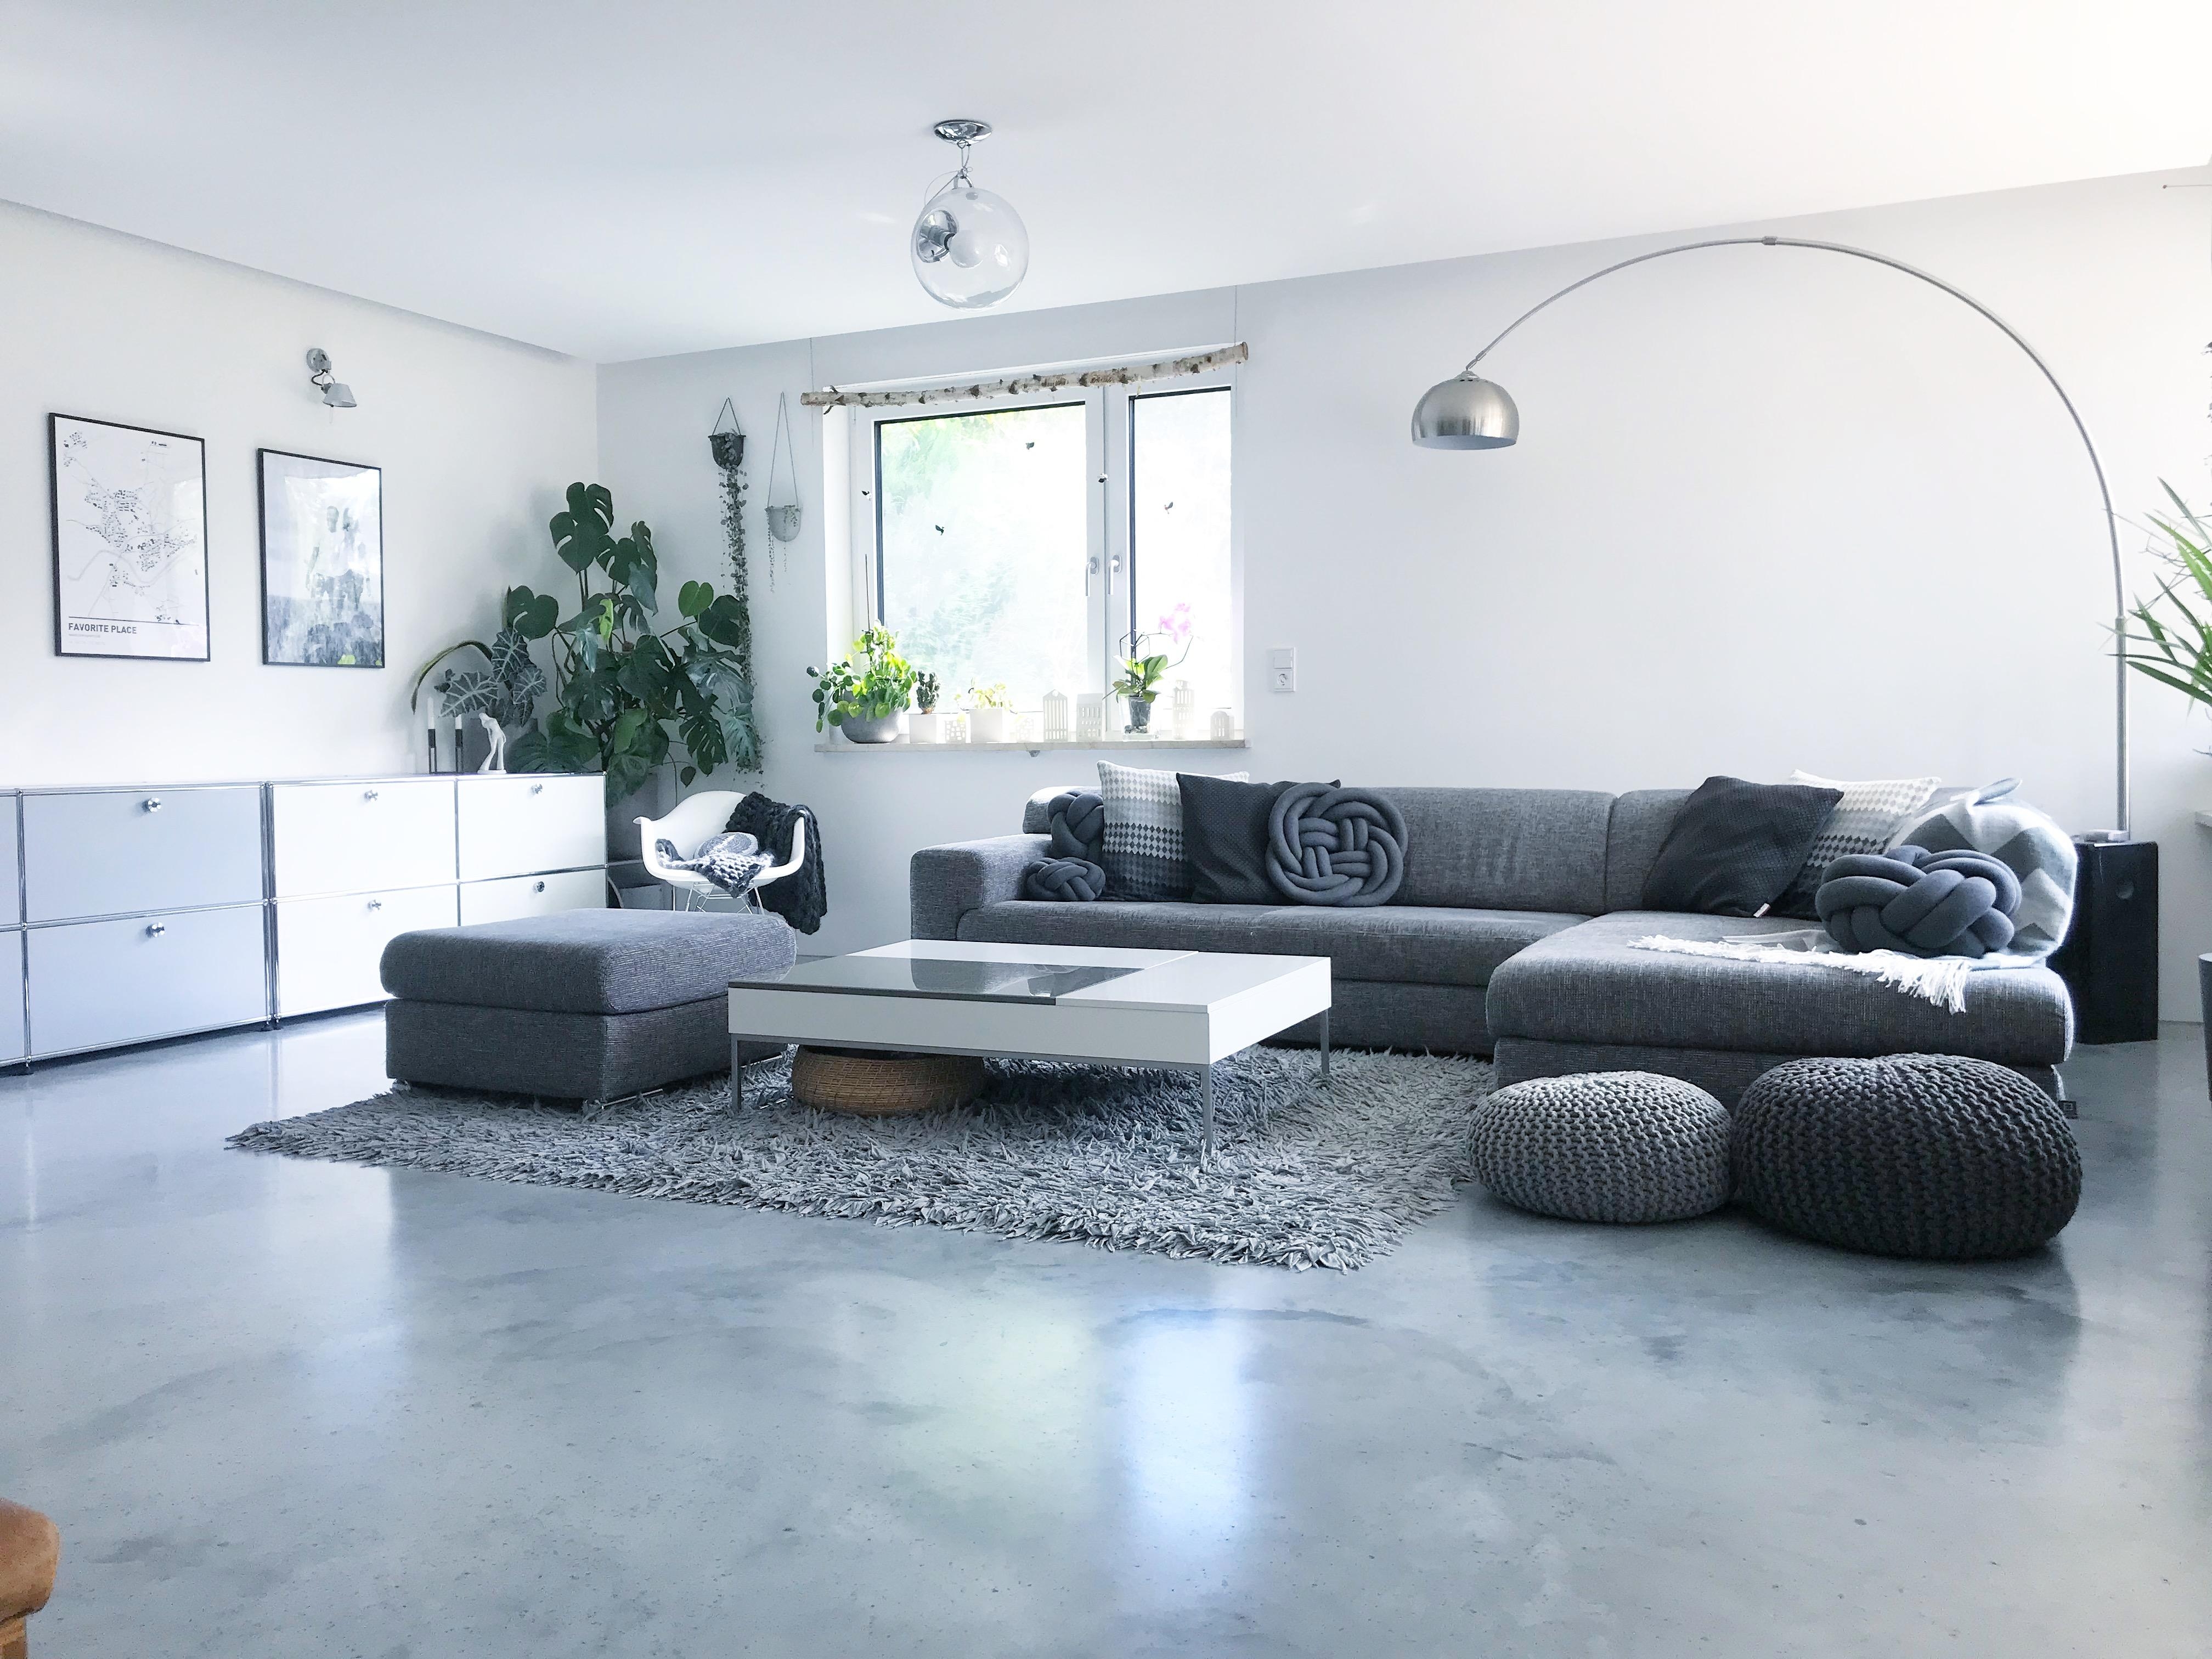 WOHNZIMMER und unser Lieblingsplatz im Haus 🖤 #livingchallenge @couch_magazin #wohnzimmer #livingroom #sichtbeton